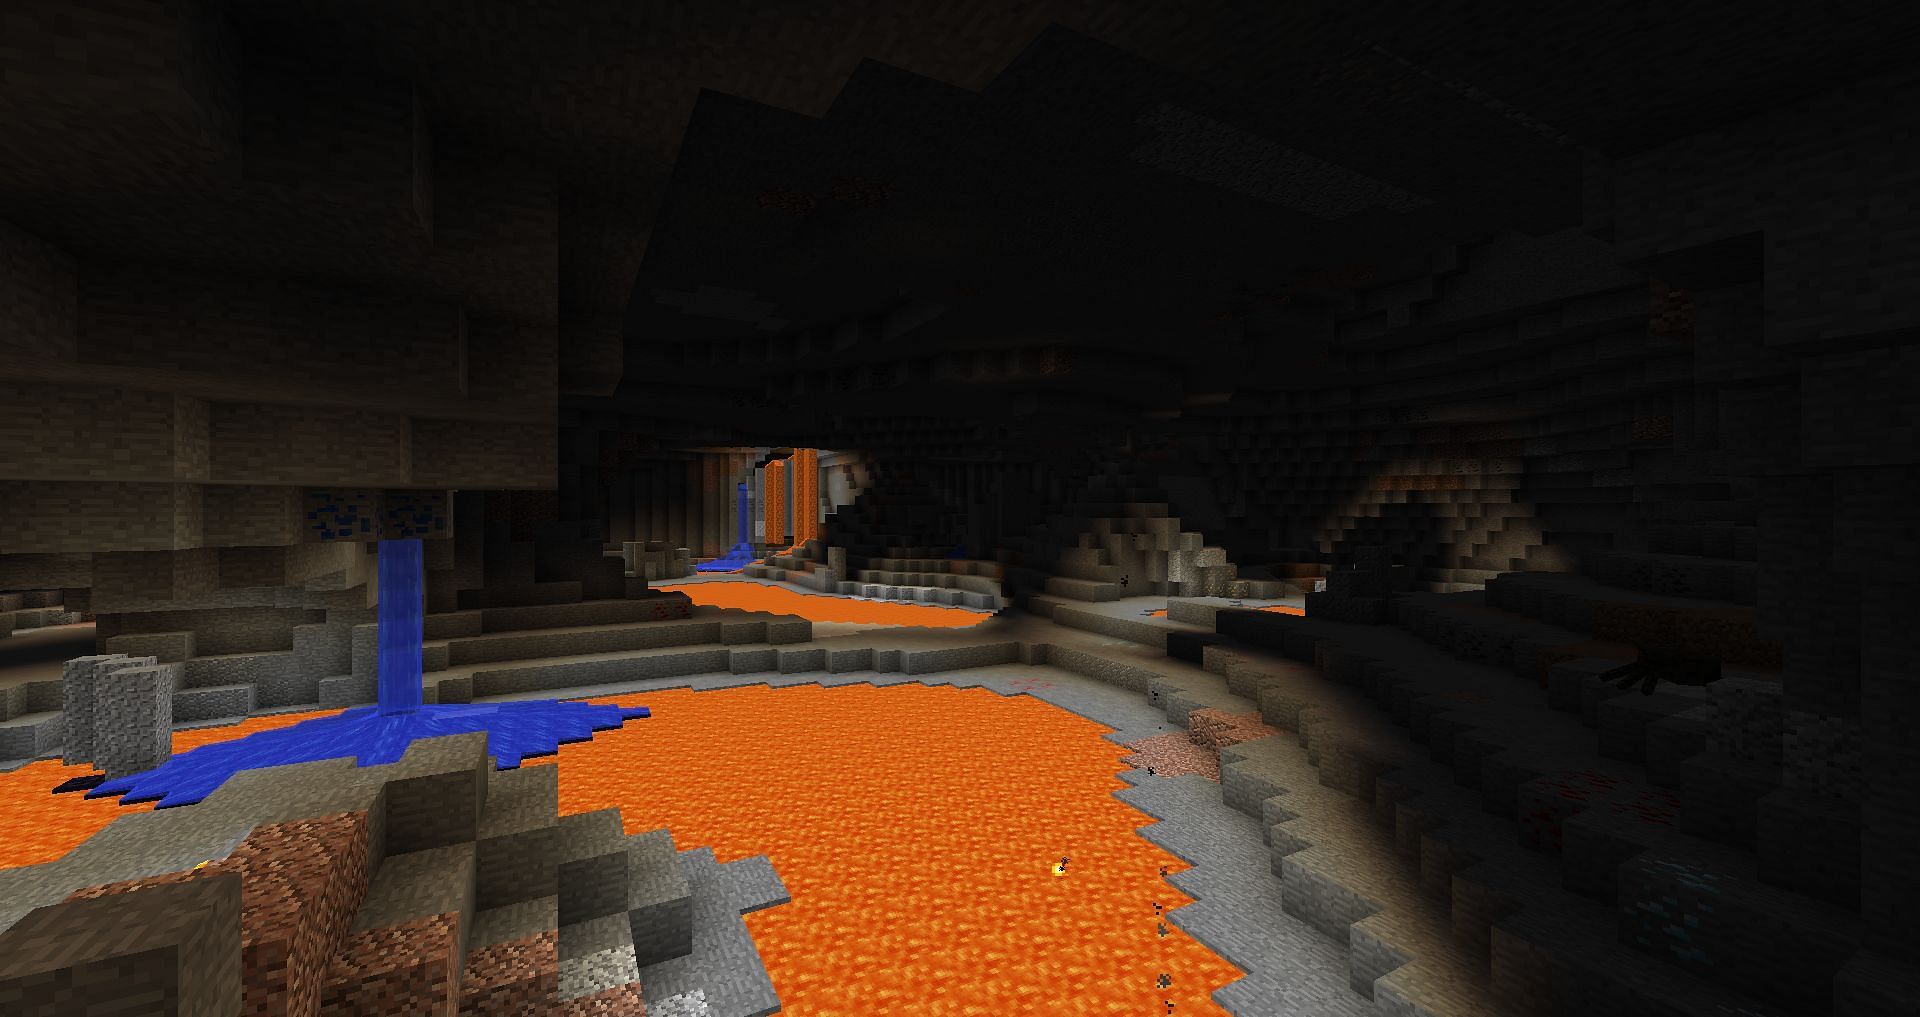 Huge Caves in Minecraft 1.18 update (Image via u/Sir_Herpicus, Reddit)